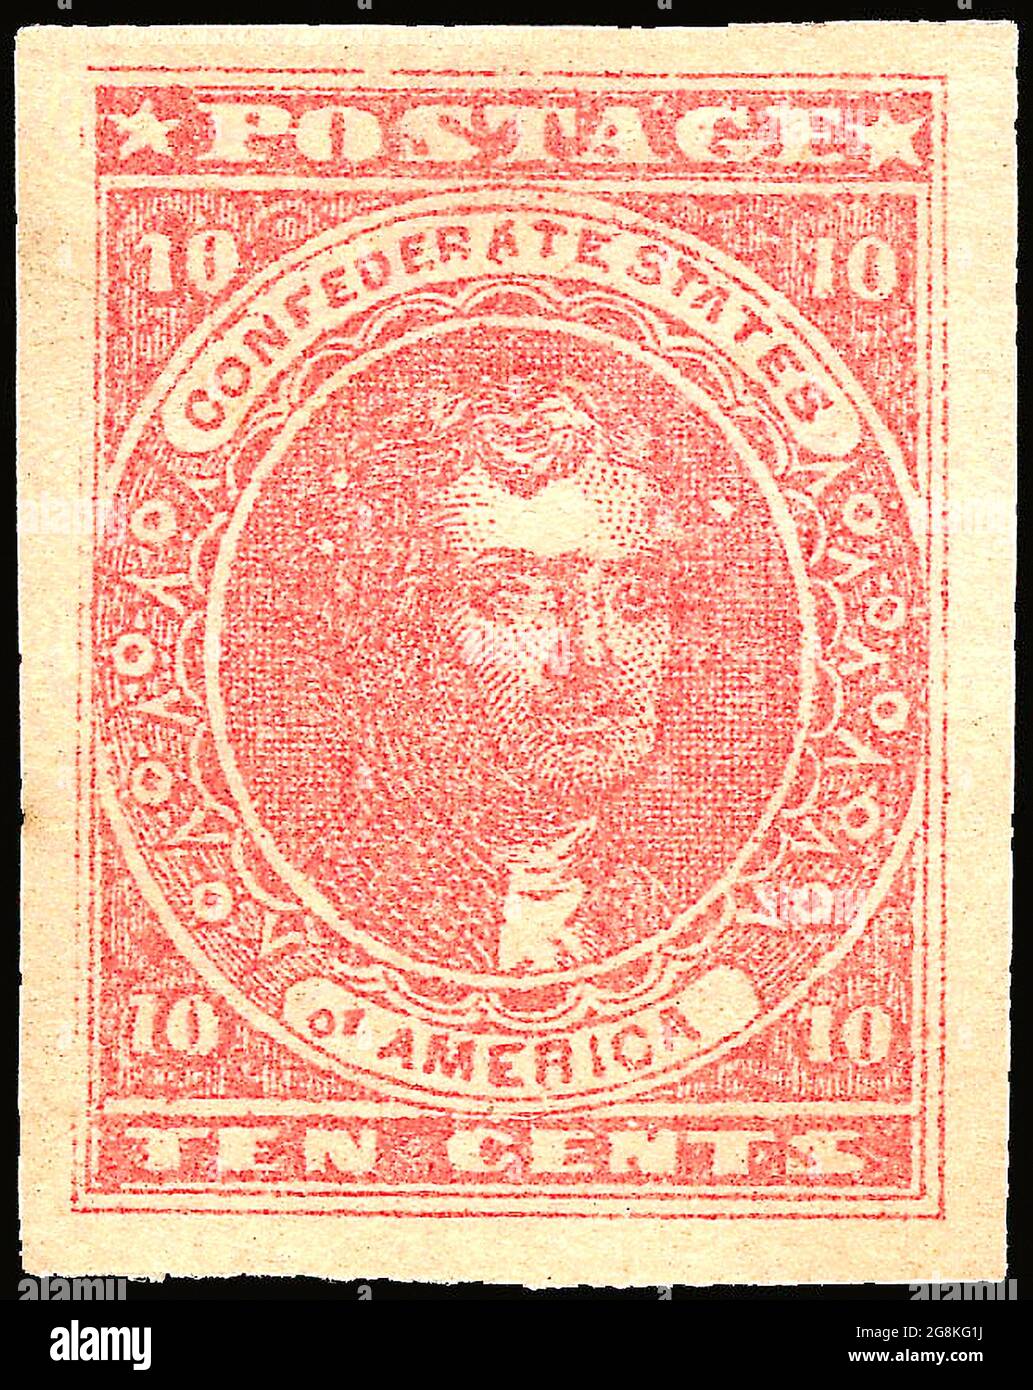 Timbre-poste confédéré, rose à dix cents, numéro général 1862, type 5 le timbre-poste représente Thomas Jefferson imprimé en rouge. Service postal des États confédérés d'Amérique. Banque D'Images